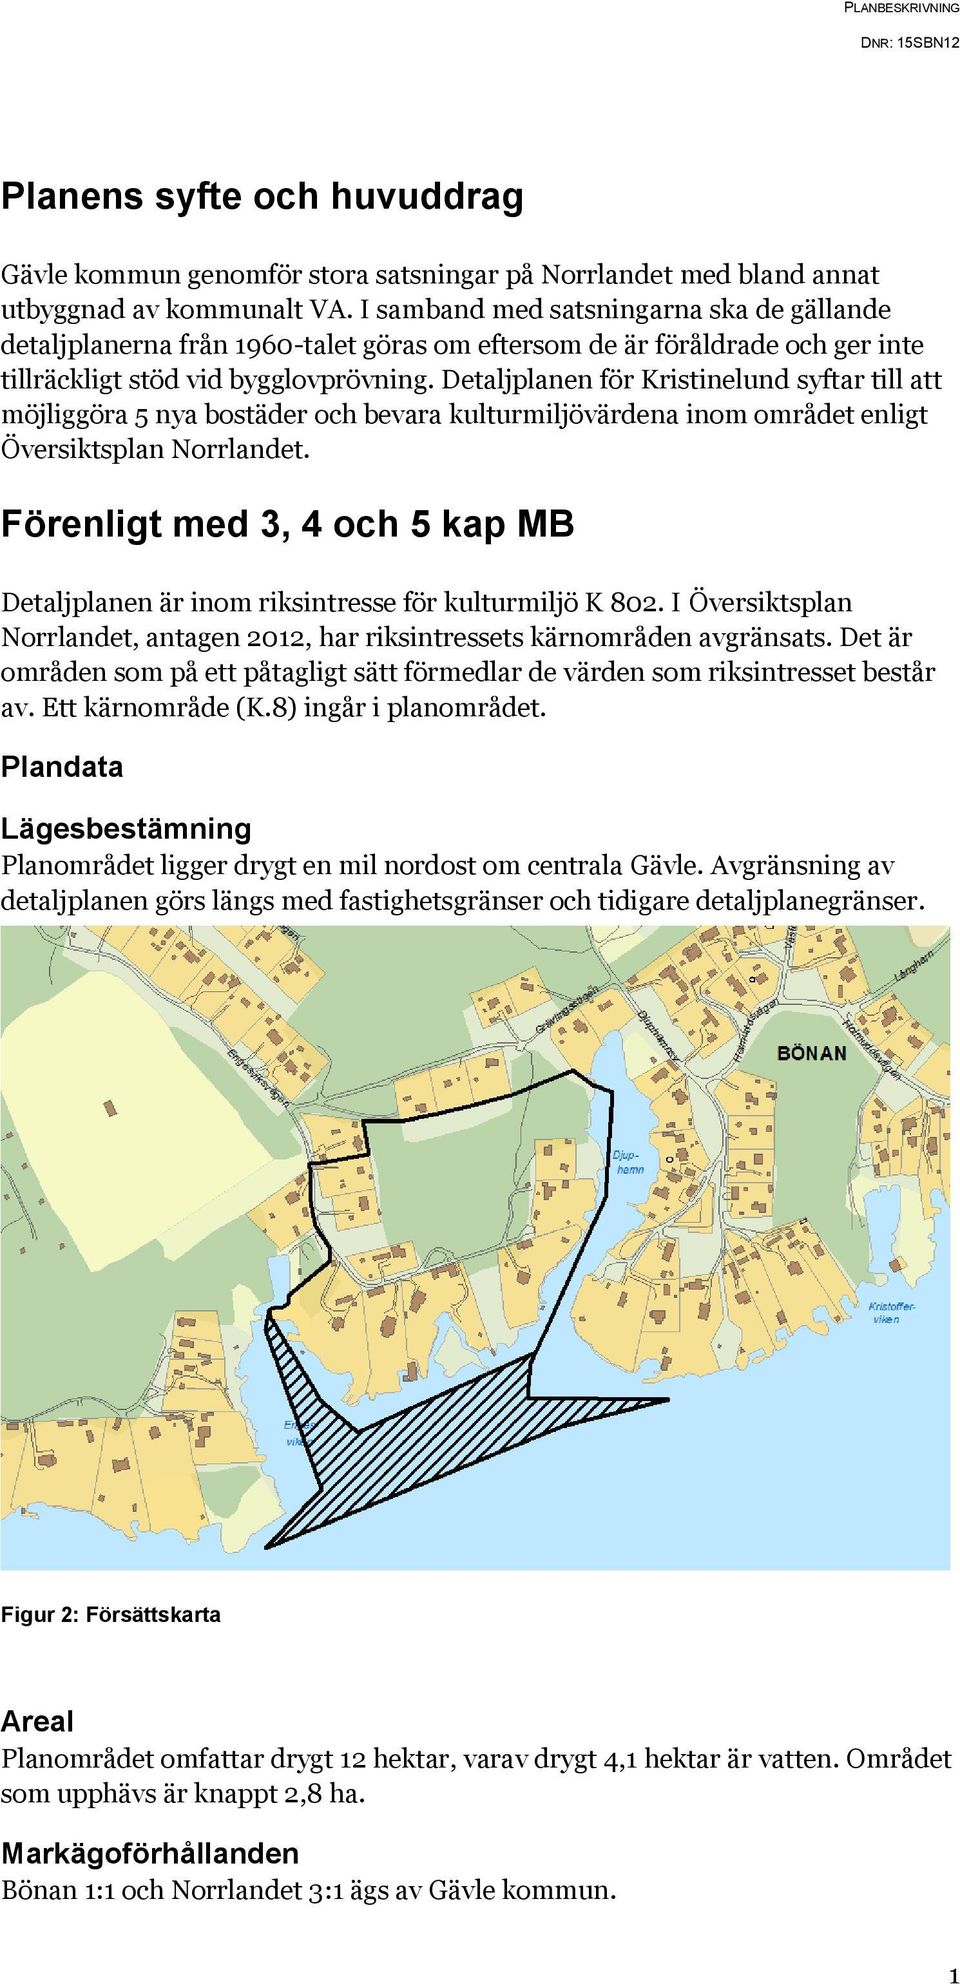 Detaljplanen för Kristinelund syftar till att möjliggöra 5 nya bostäder och bevara kulturmiljövärdena inom området enligt Översiktsplan Norrlandet.